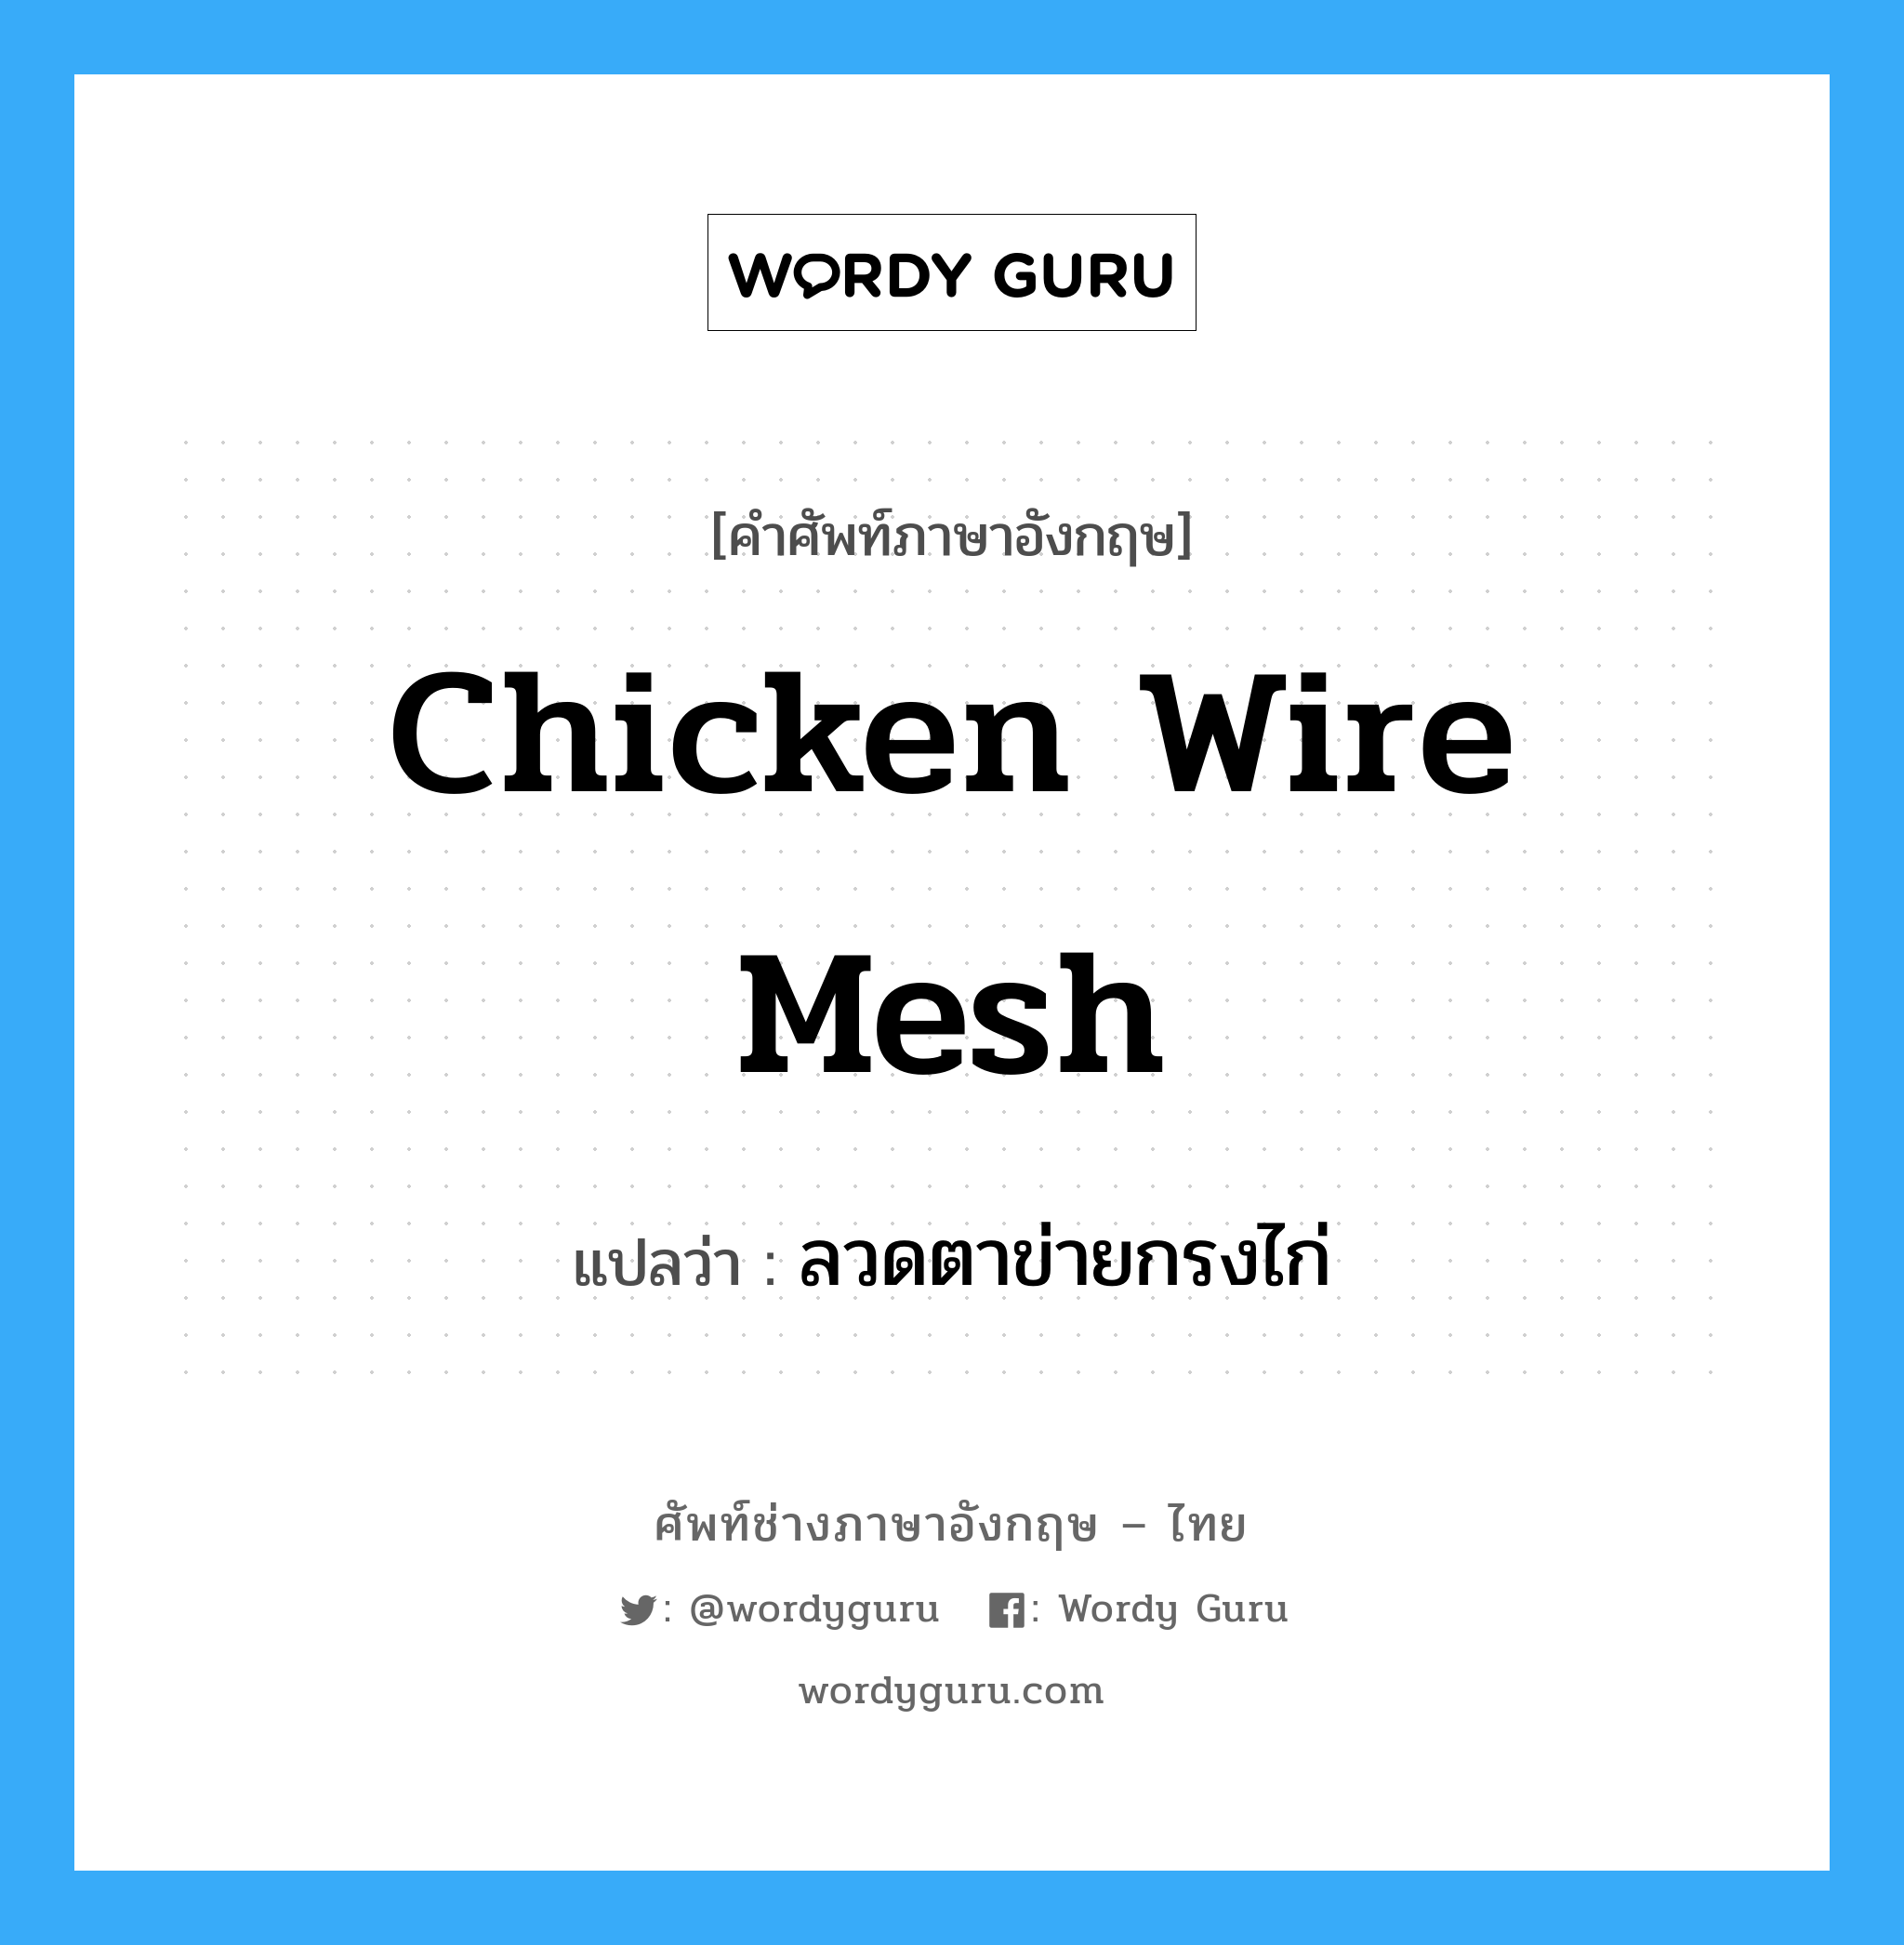 ลวดตาข่ายกรงไก่ ภาษาอังกฤษ?, คำศัพท์ช่างภาษาอังกฤษ - ไทย ลวดตาข่ายกรงไก่ คำศัพท์ภาษาอังกฤษ ลวดตาข่ายกรงไก่ แปลว่า chicken wire mesh